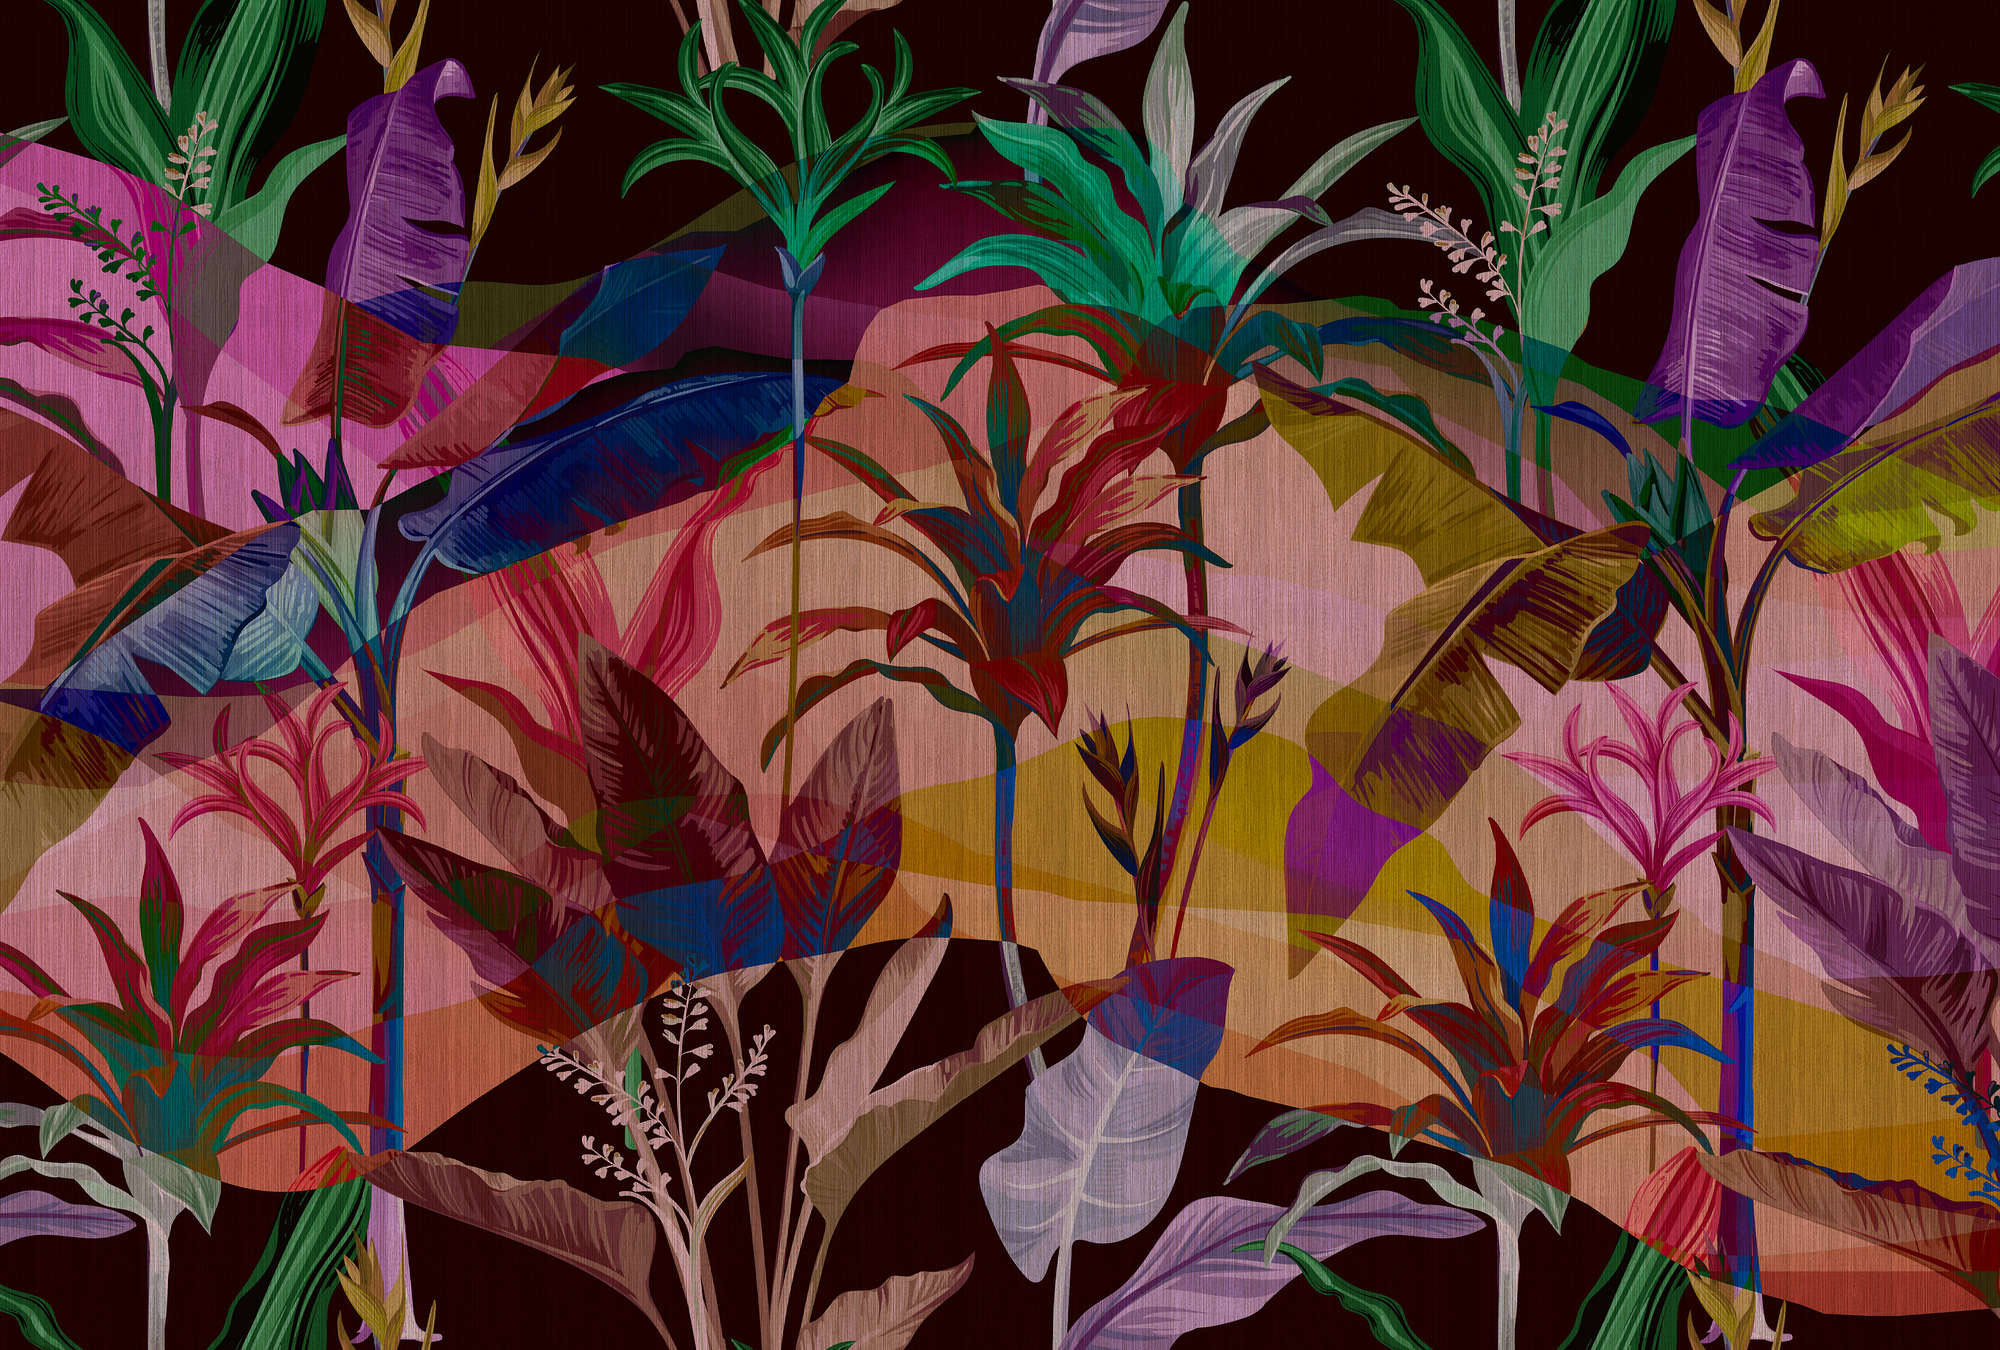             Palmyra 1 - Jungle Wallpaper kleurrijke & abstracte bladeren
        